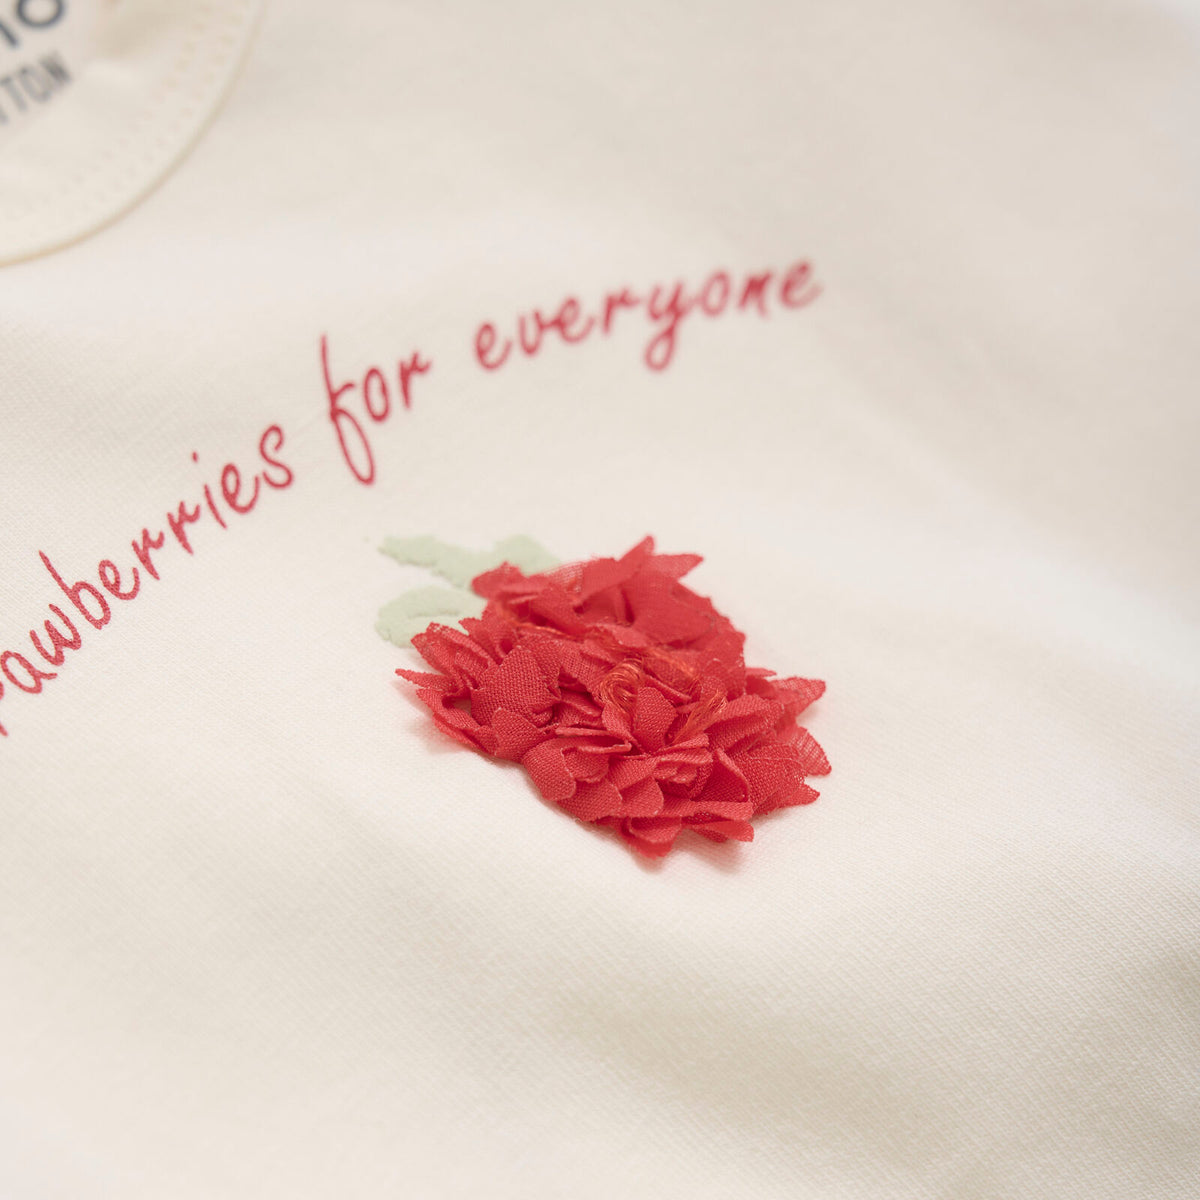 Verziert mit einer fröhlichen Erdbeere auf der Brust und dem Spruch "Strawbeeries for everyone", wird das weiße Shirt zu einem unverzichtbaren Teil eurer Frühlings- und Sommergarderobe - egal, ob ihr ein Erdbeerfan seid oder nicht!